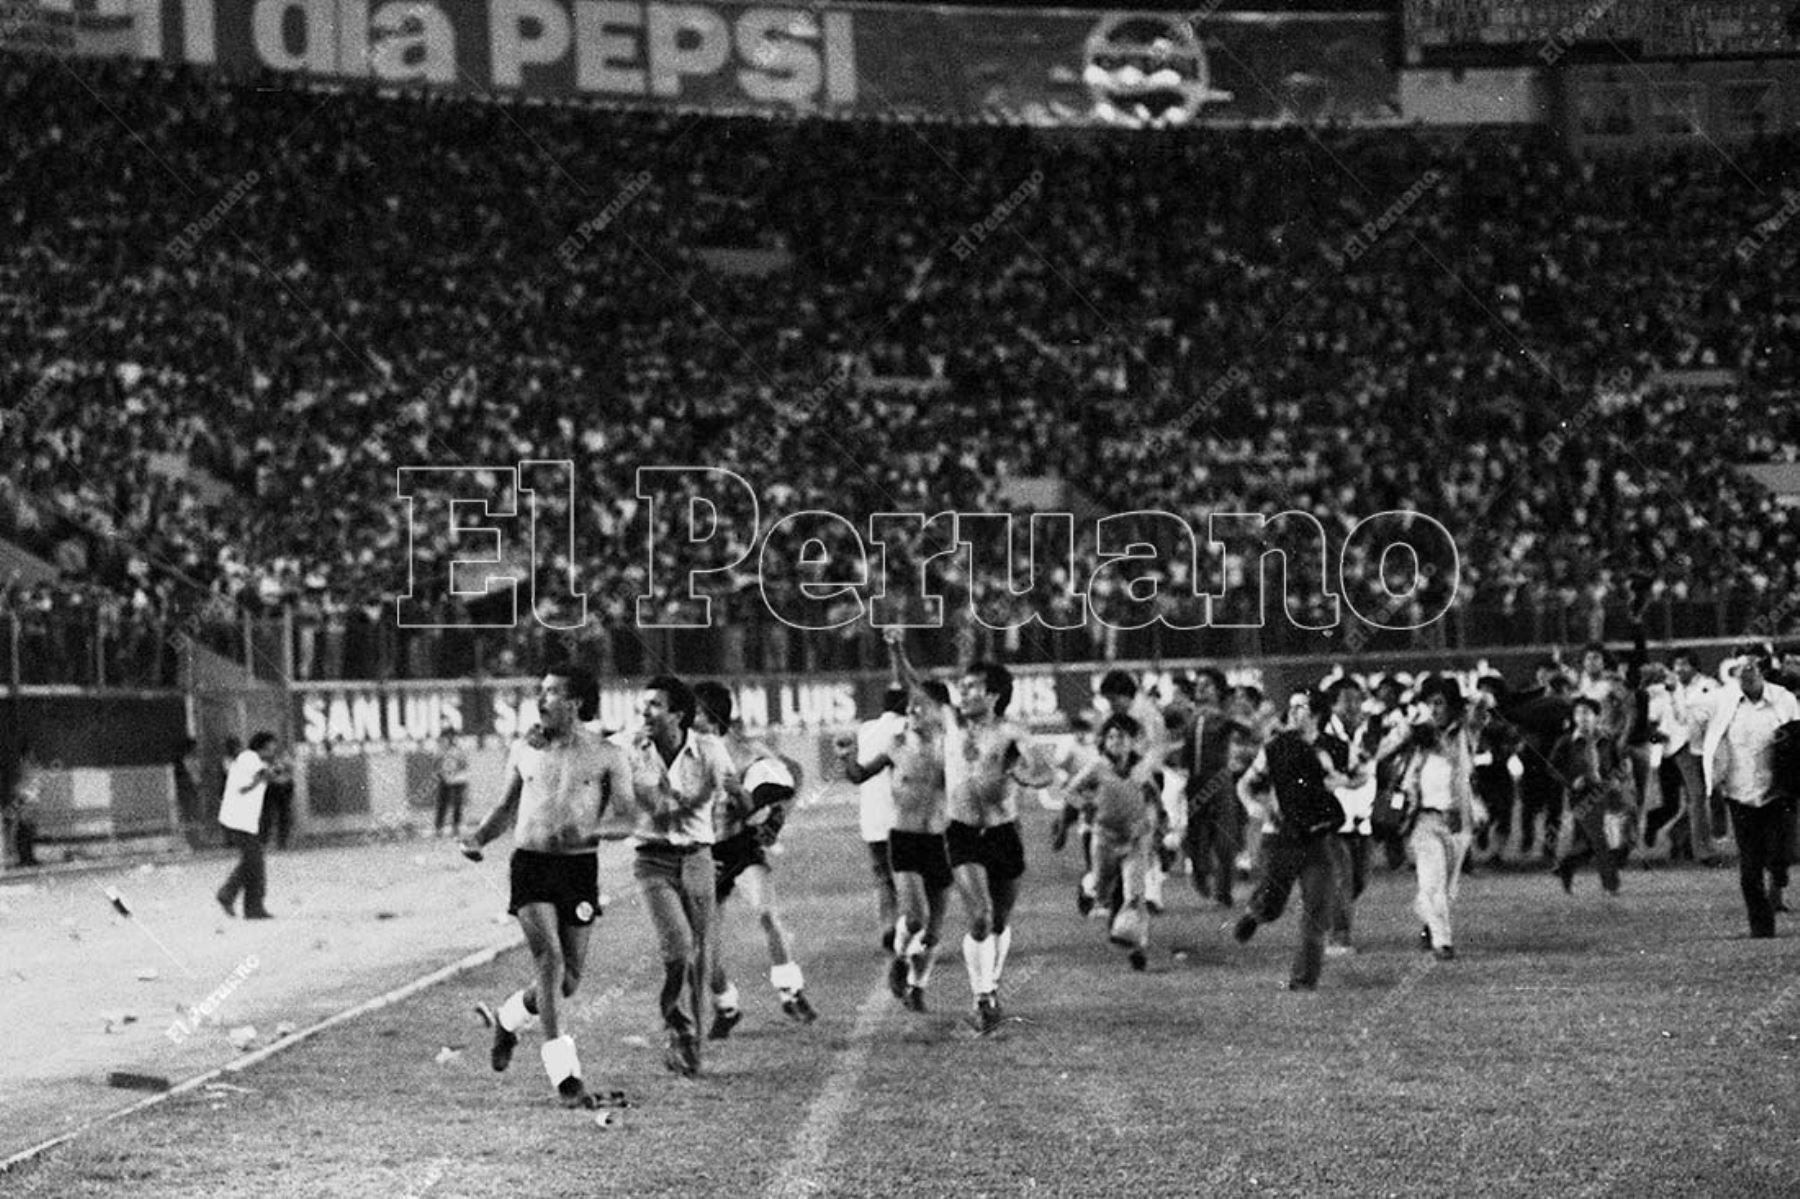 Lima - 31 enero 1982 / FBC Melgar de Arequipa se coronó campeón del fútbol peruano por primera vez en su historia al empatar 1-1 con Sporting Cristal. Los arequipeños dieron la vuelta olímpica en el Estadio Nacional. Foto: Archivo Histórico de El Peruano / Norman Córdova